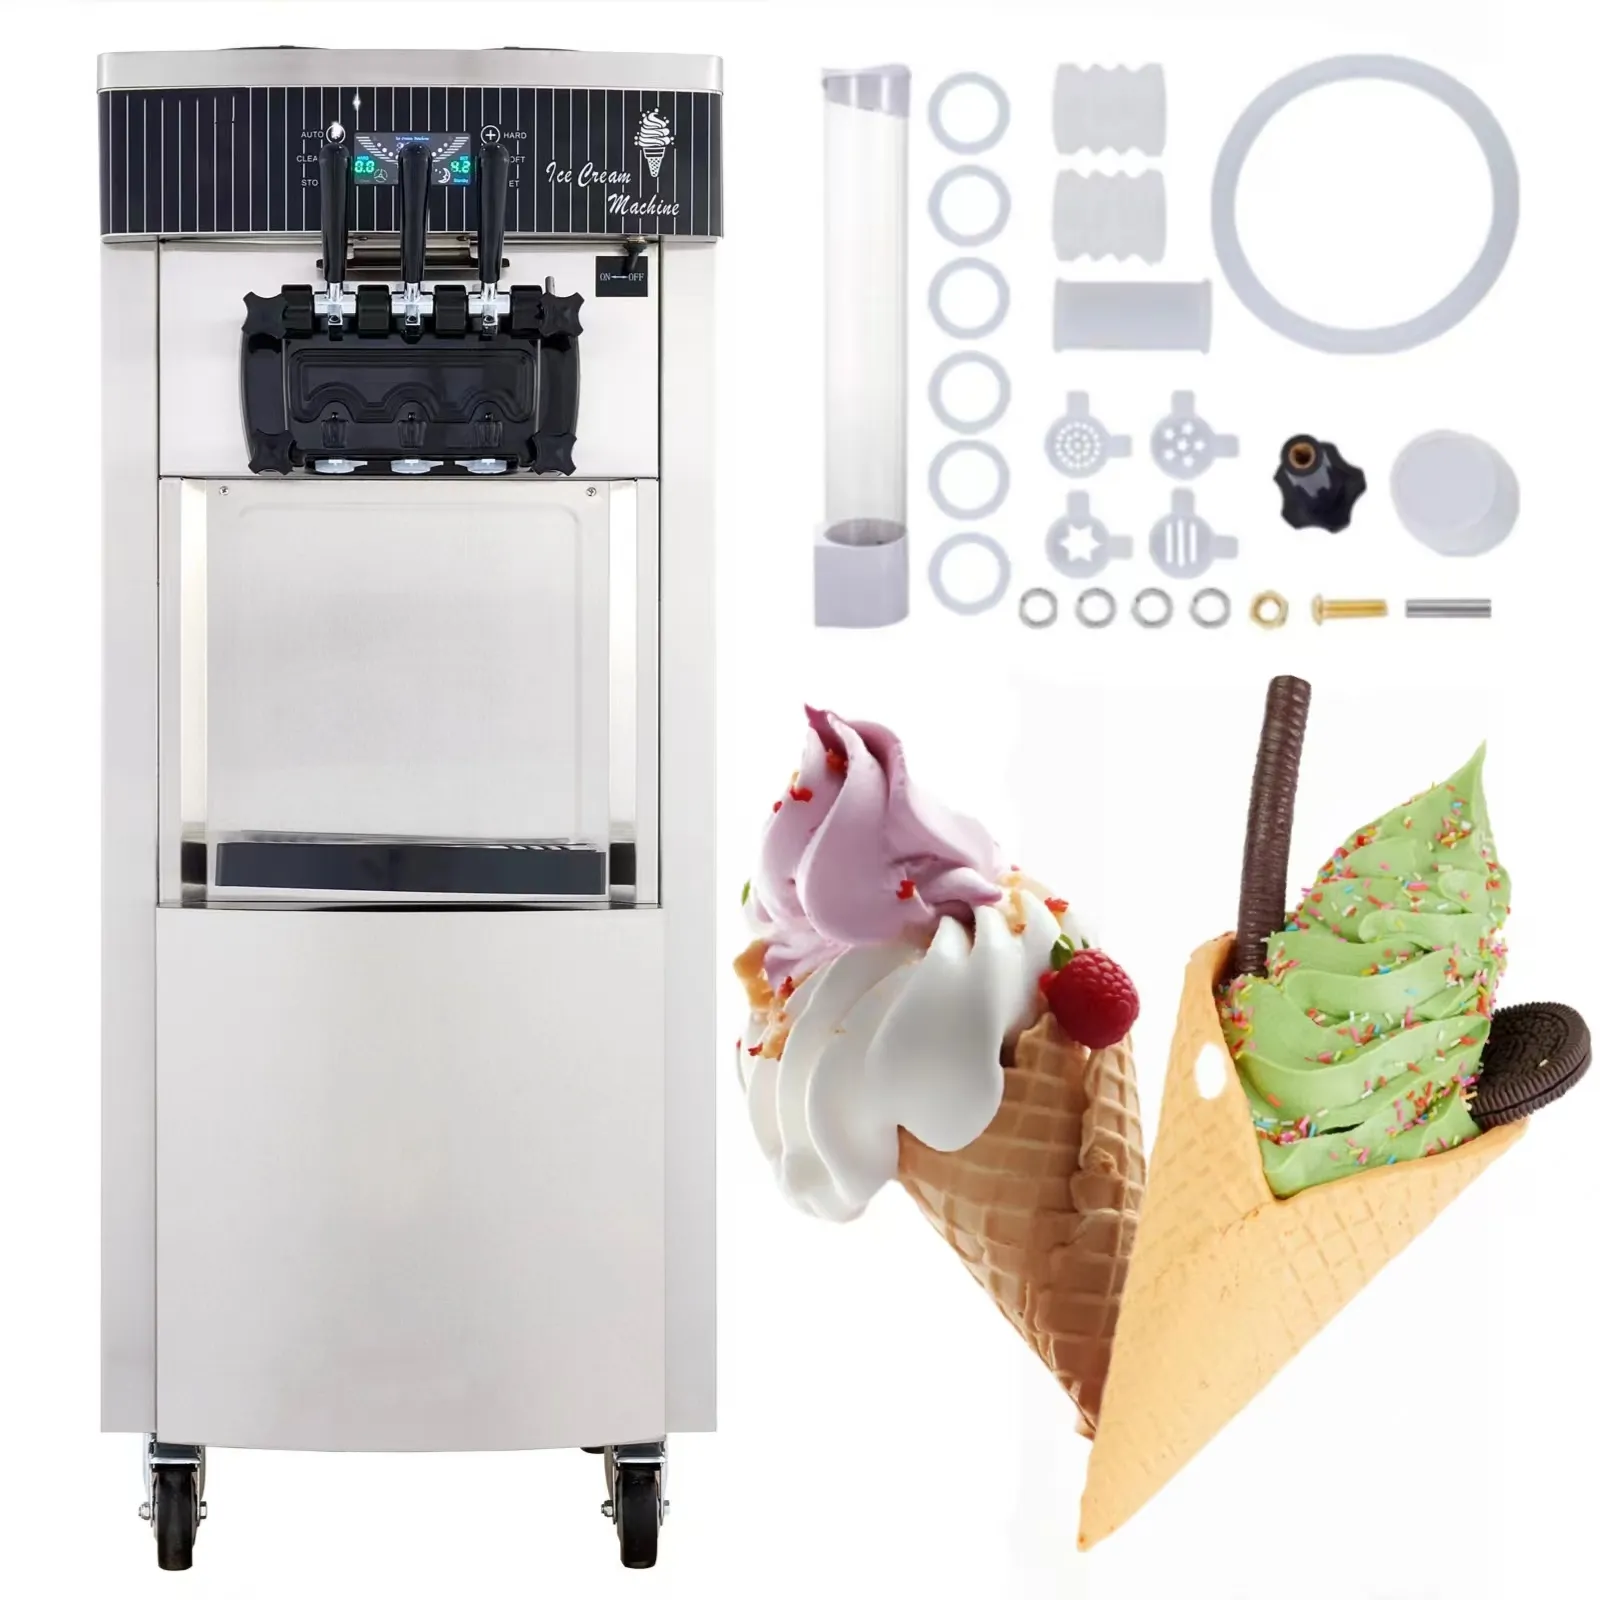 Ticari 2 + 1 tatlar dondurma yapma makinesi 2200W yumuşak hizmet dondurma makinesi LED ekran otomatik temiz ile ayakta modeli